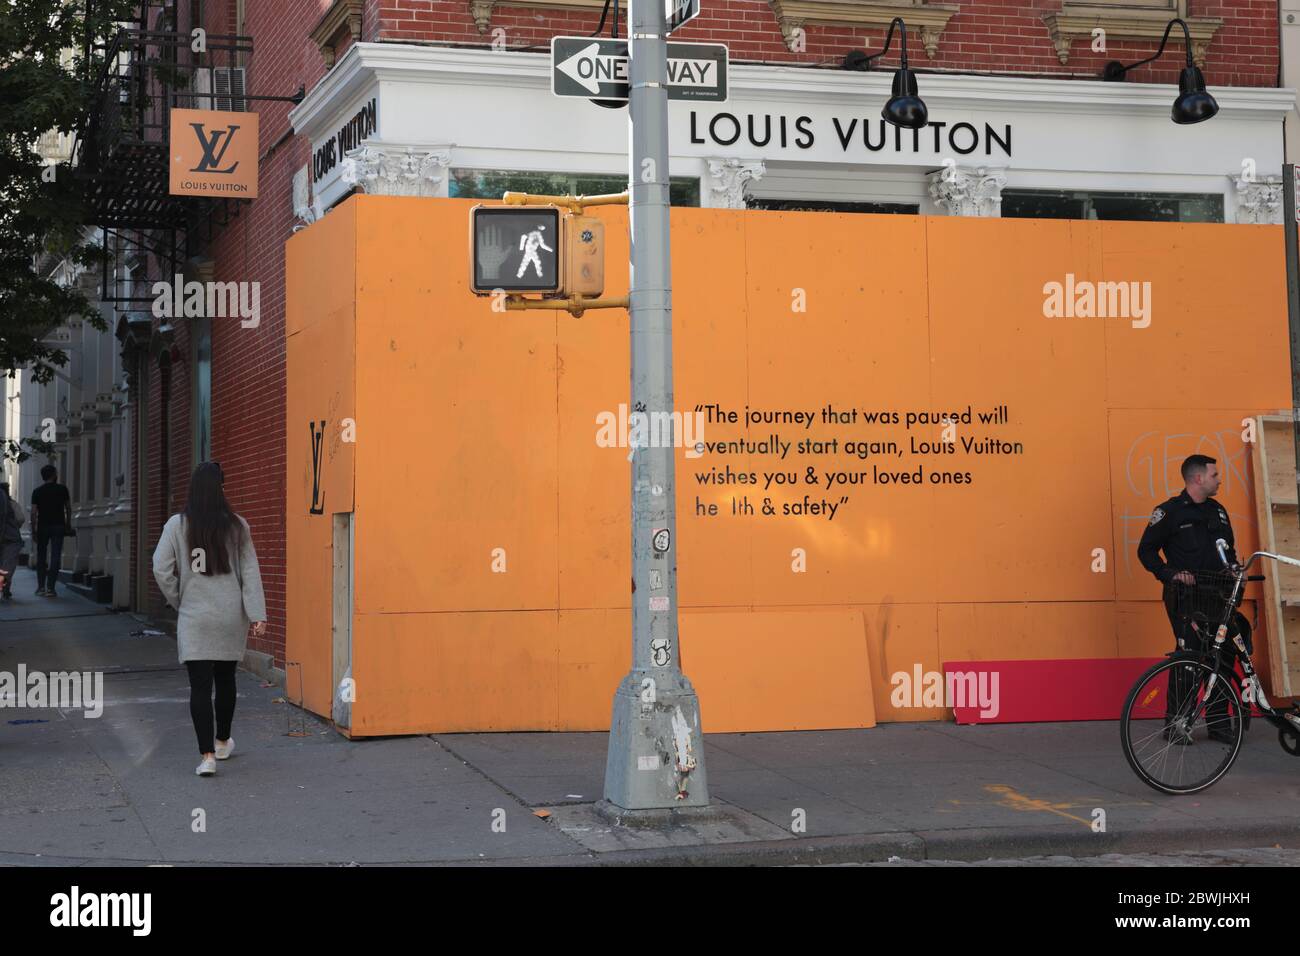 Louis Vuitton store – Stock Editorial Photo © teamtime #107068424